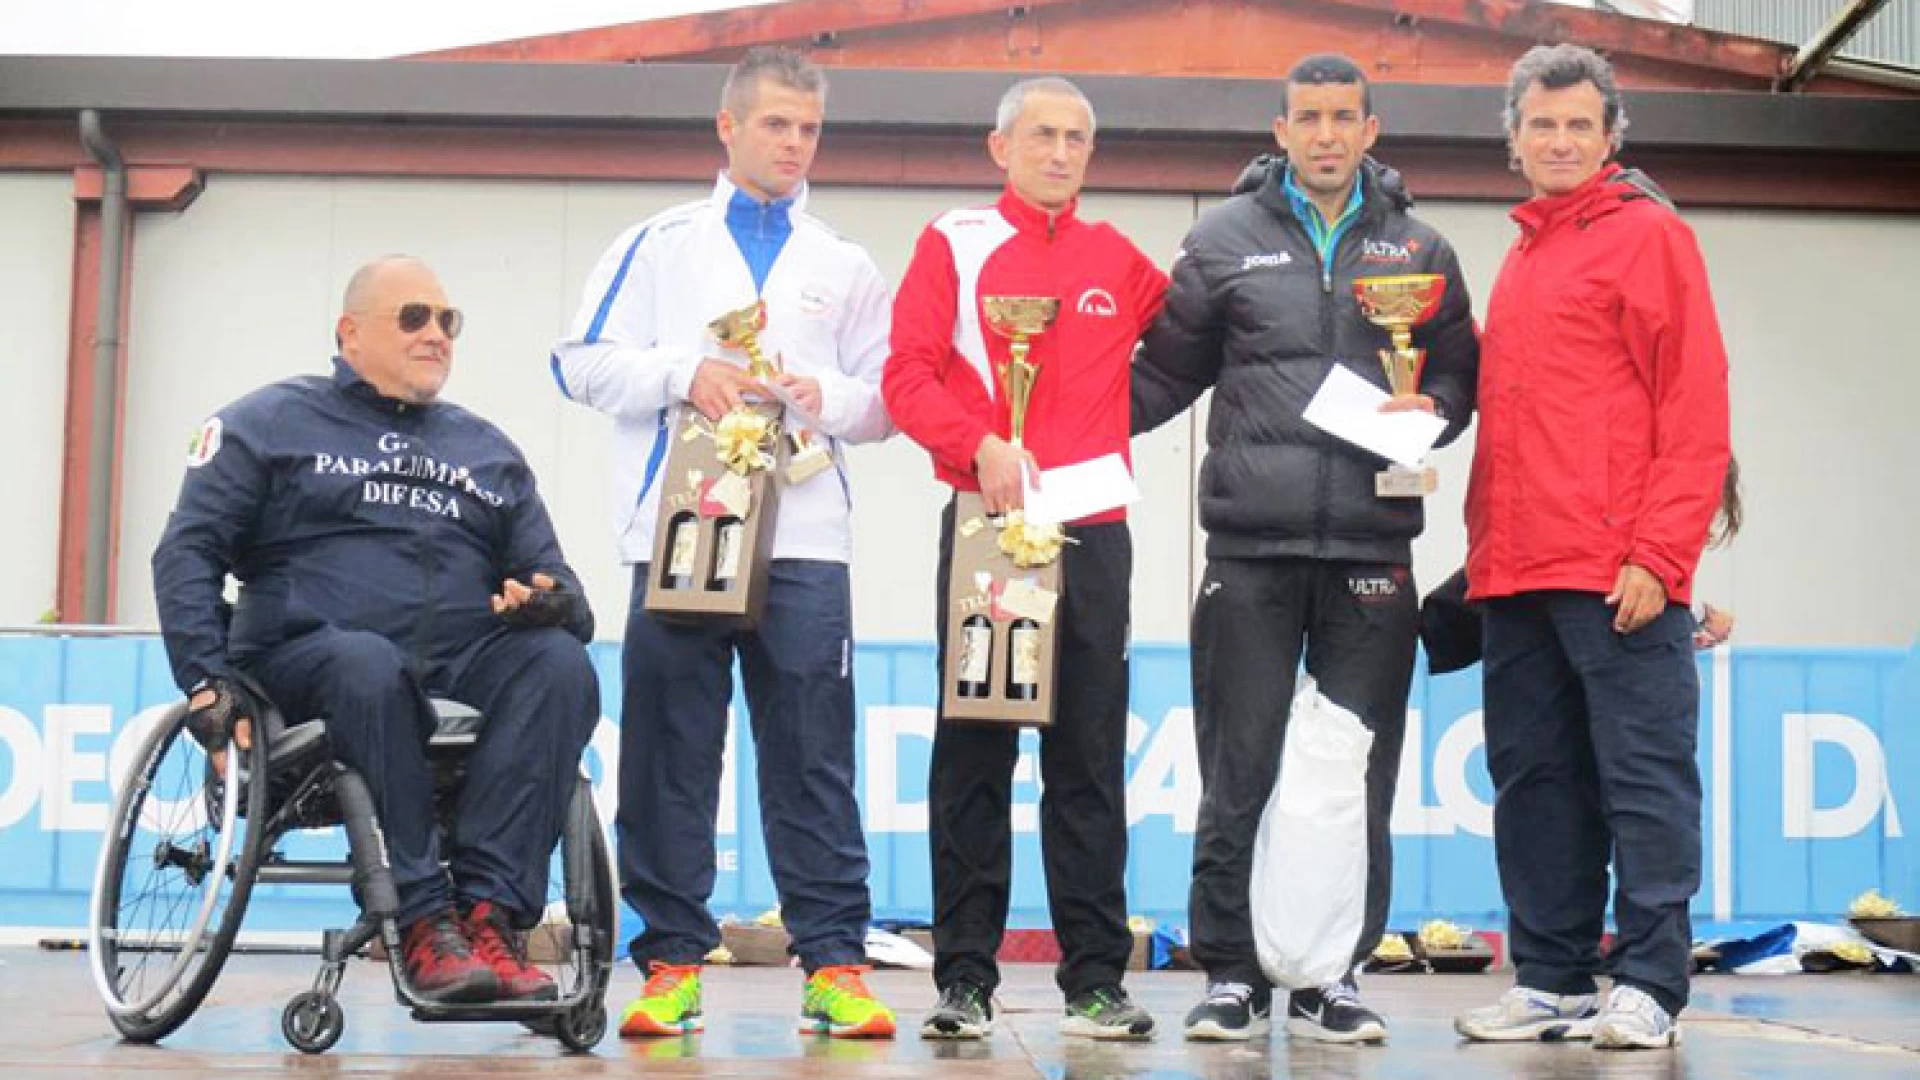 Gruppo Sportivo Virtus, Runners Termoli e Podistica Avis le società molisane che hanno brillato alla seconda edizione della Cassino Half Marathon.